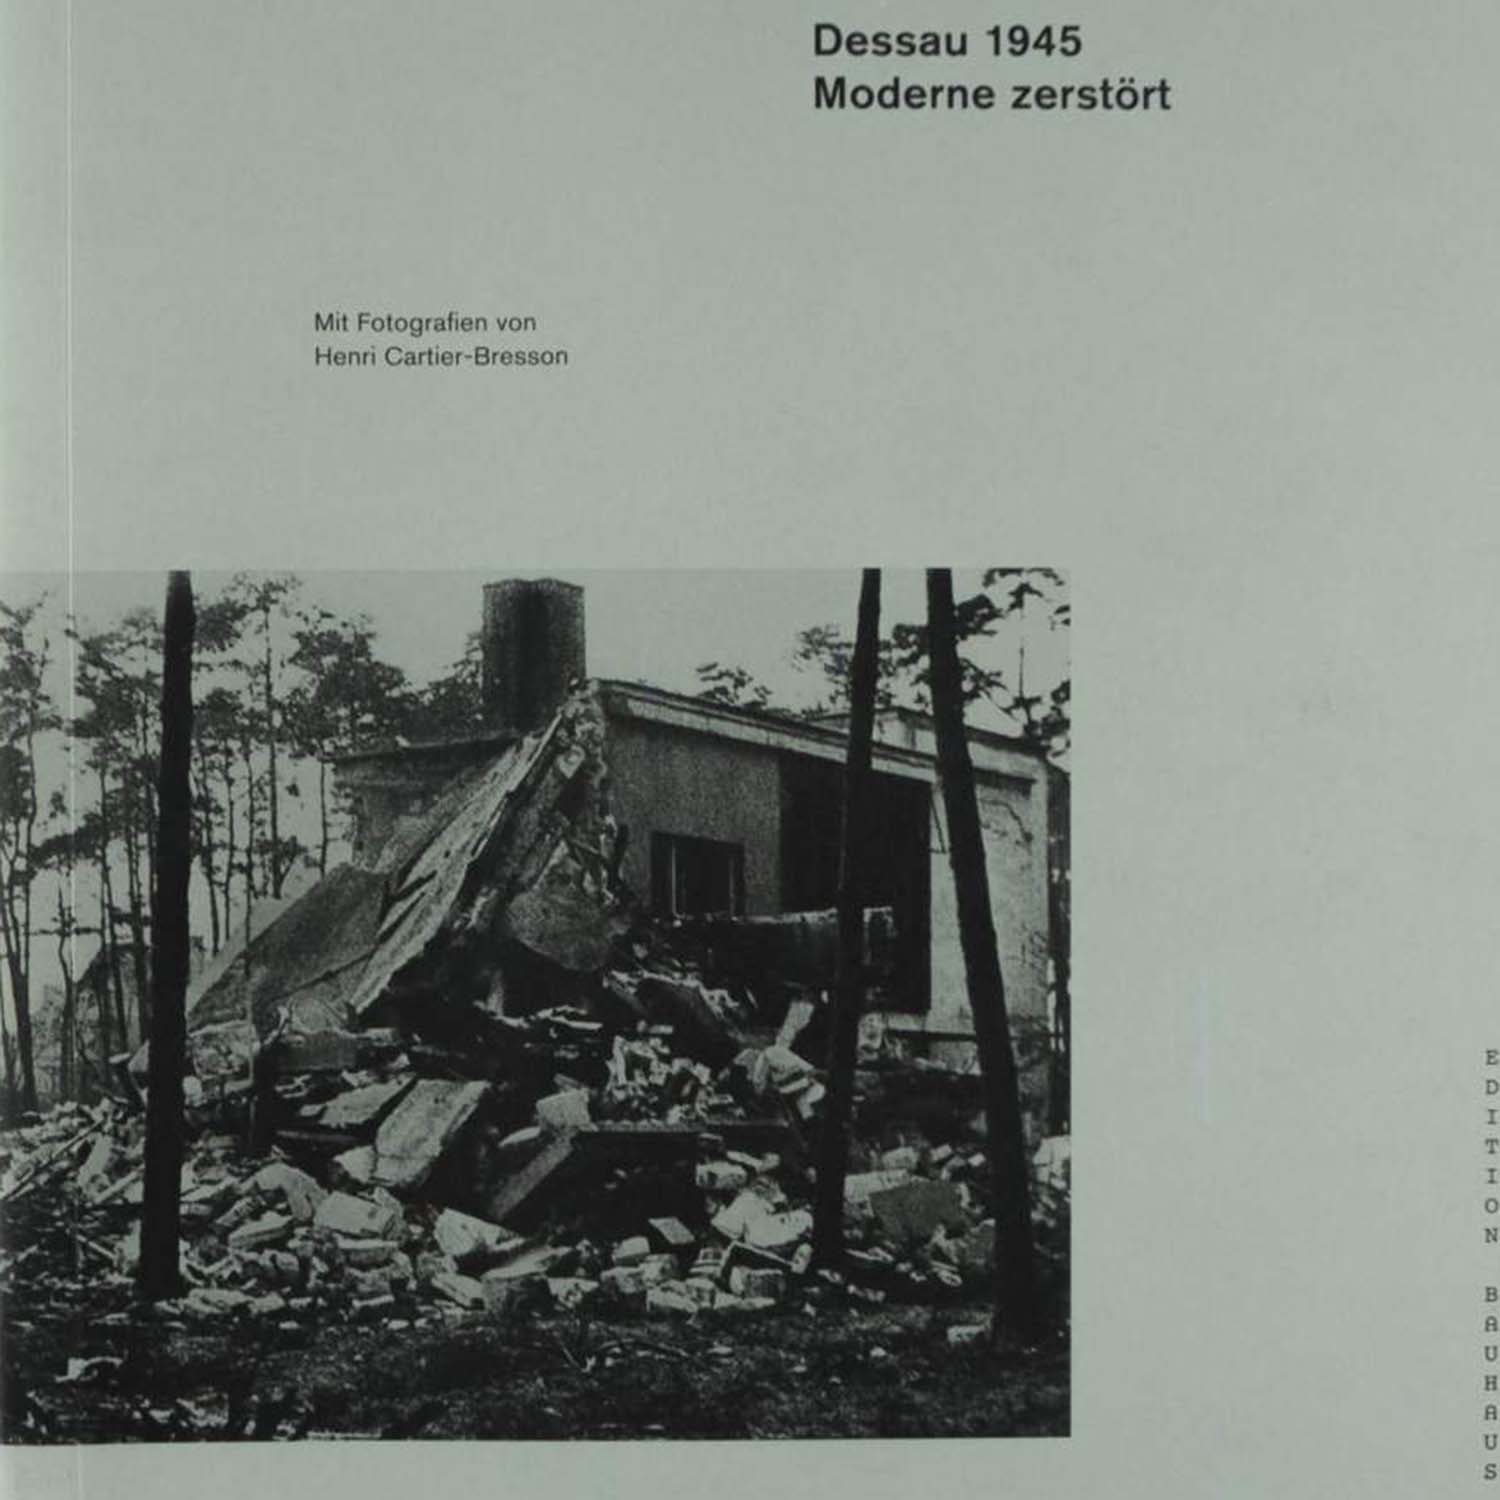 Dessau 1945 की तस्वीर